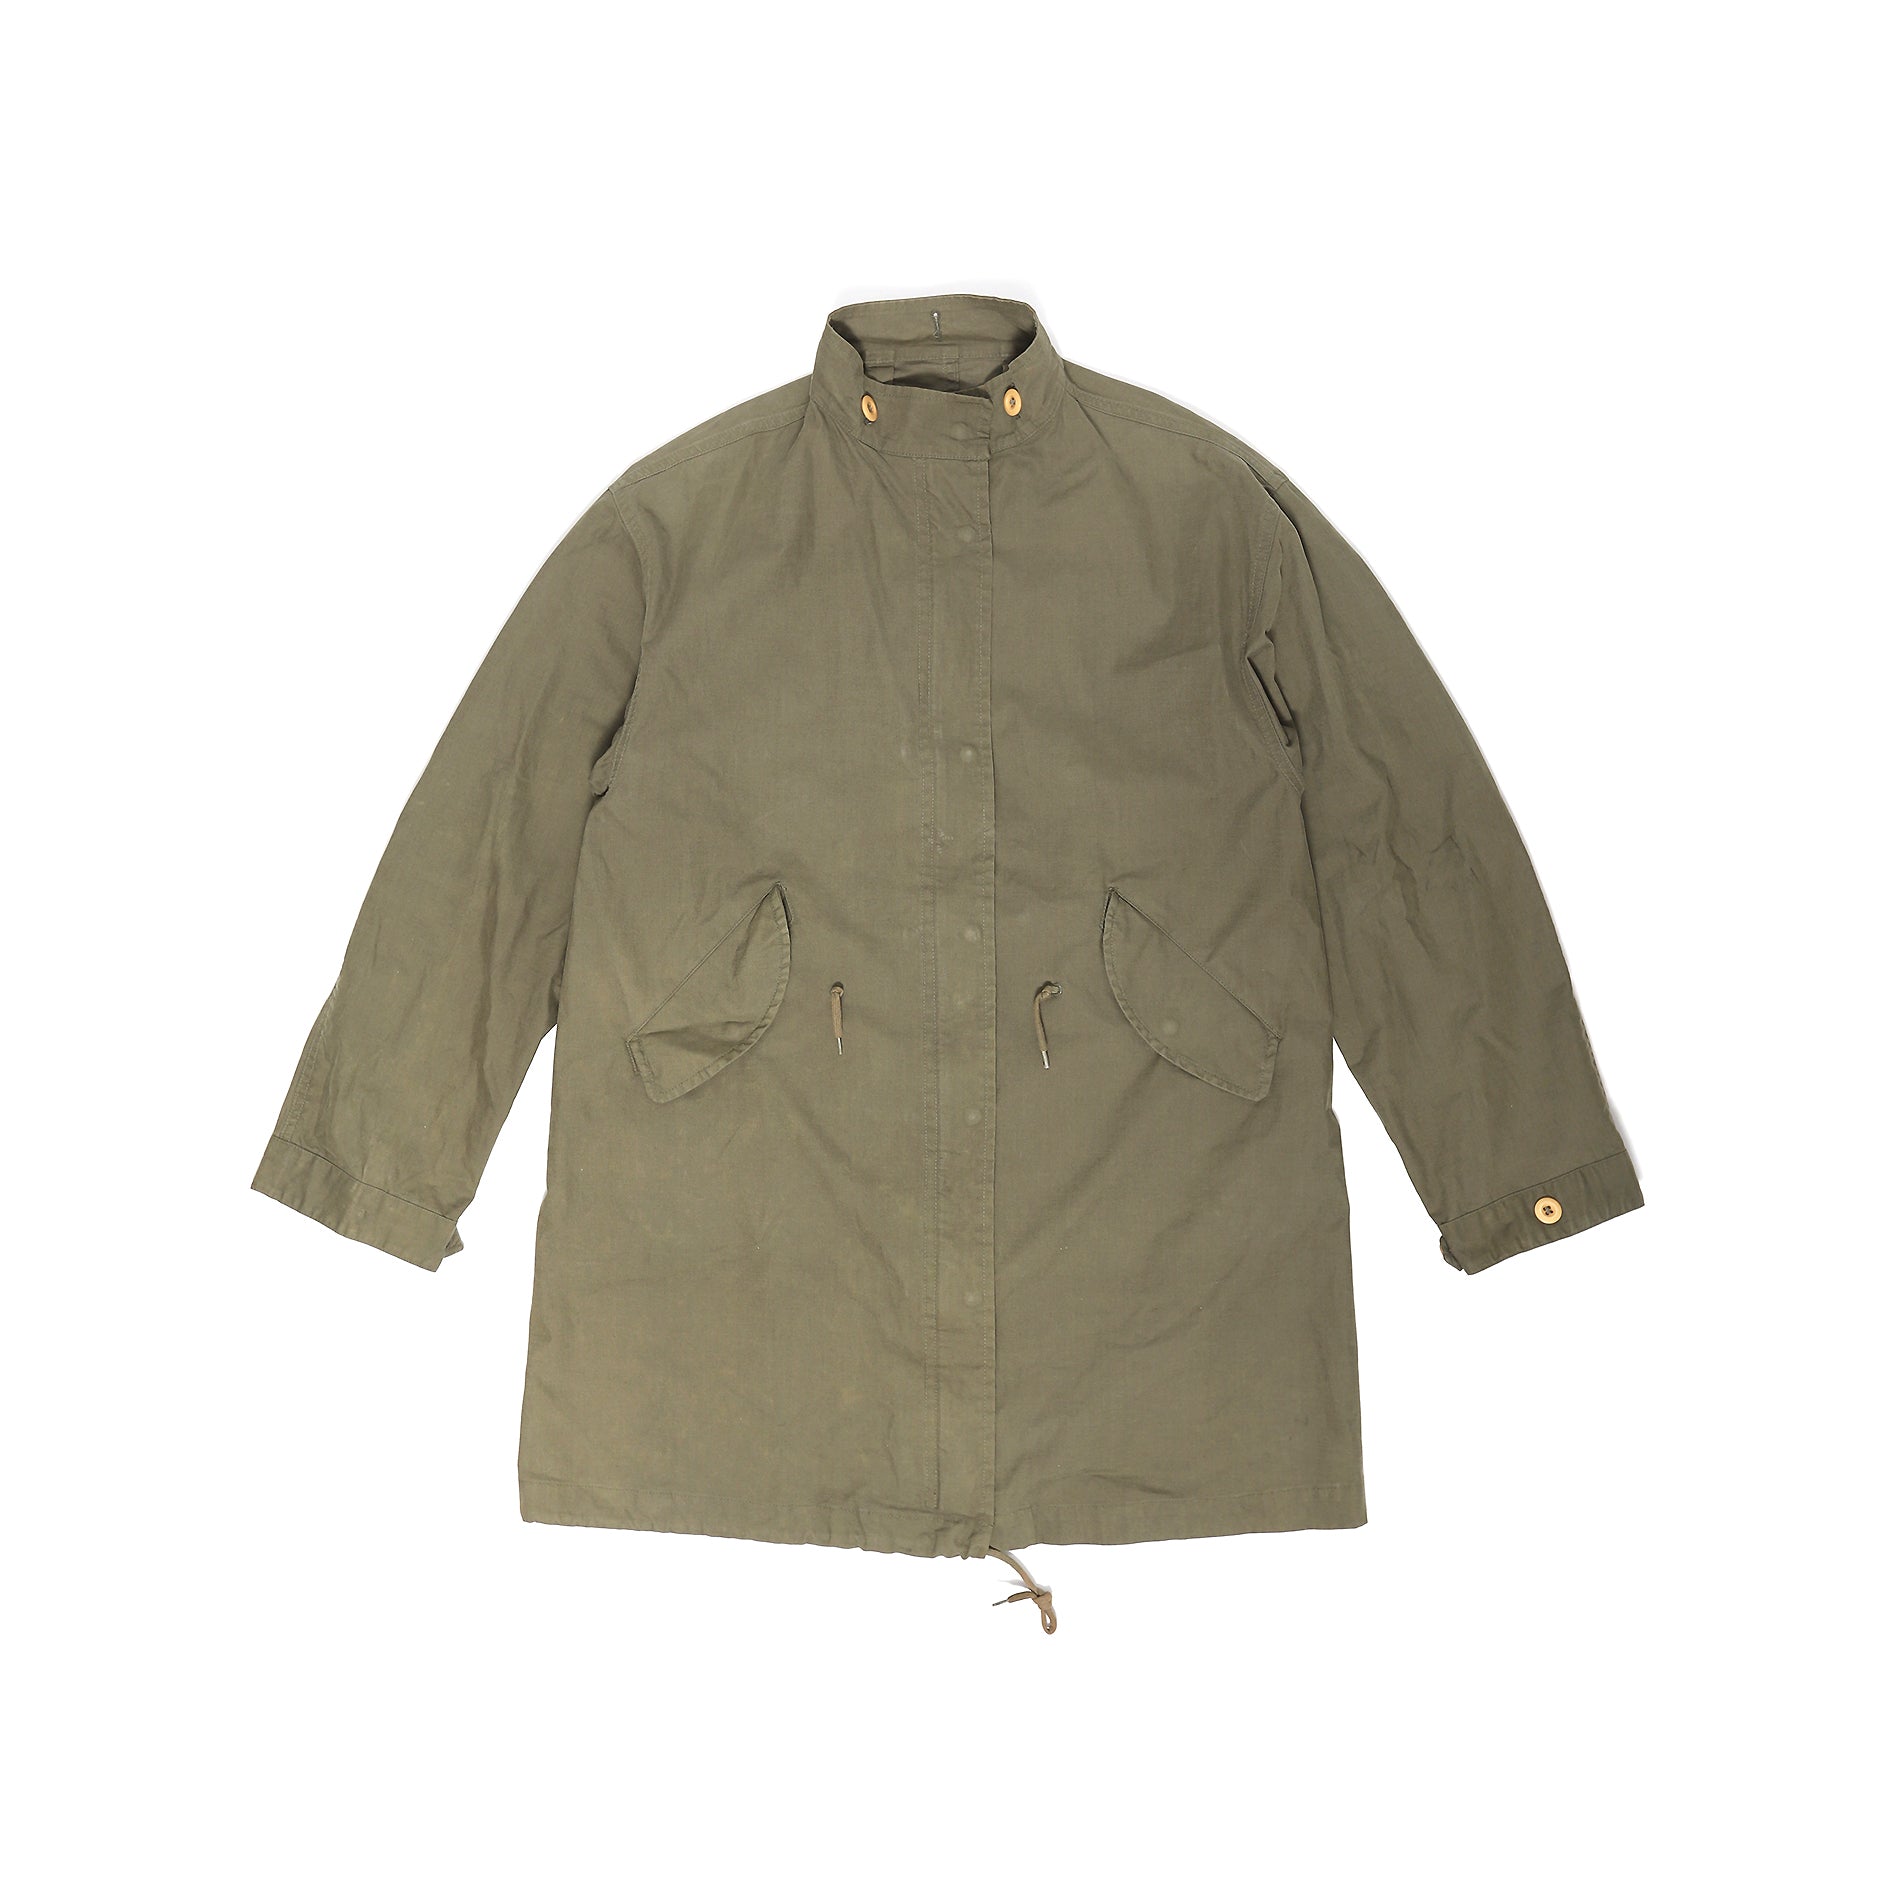 Helmut Lang 1998 Olive Military Jacket - Ākaibu Store